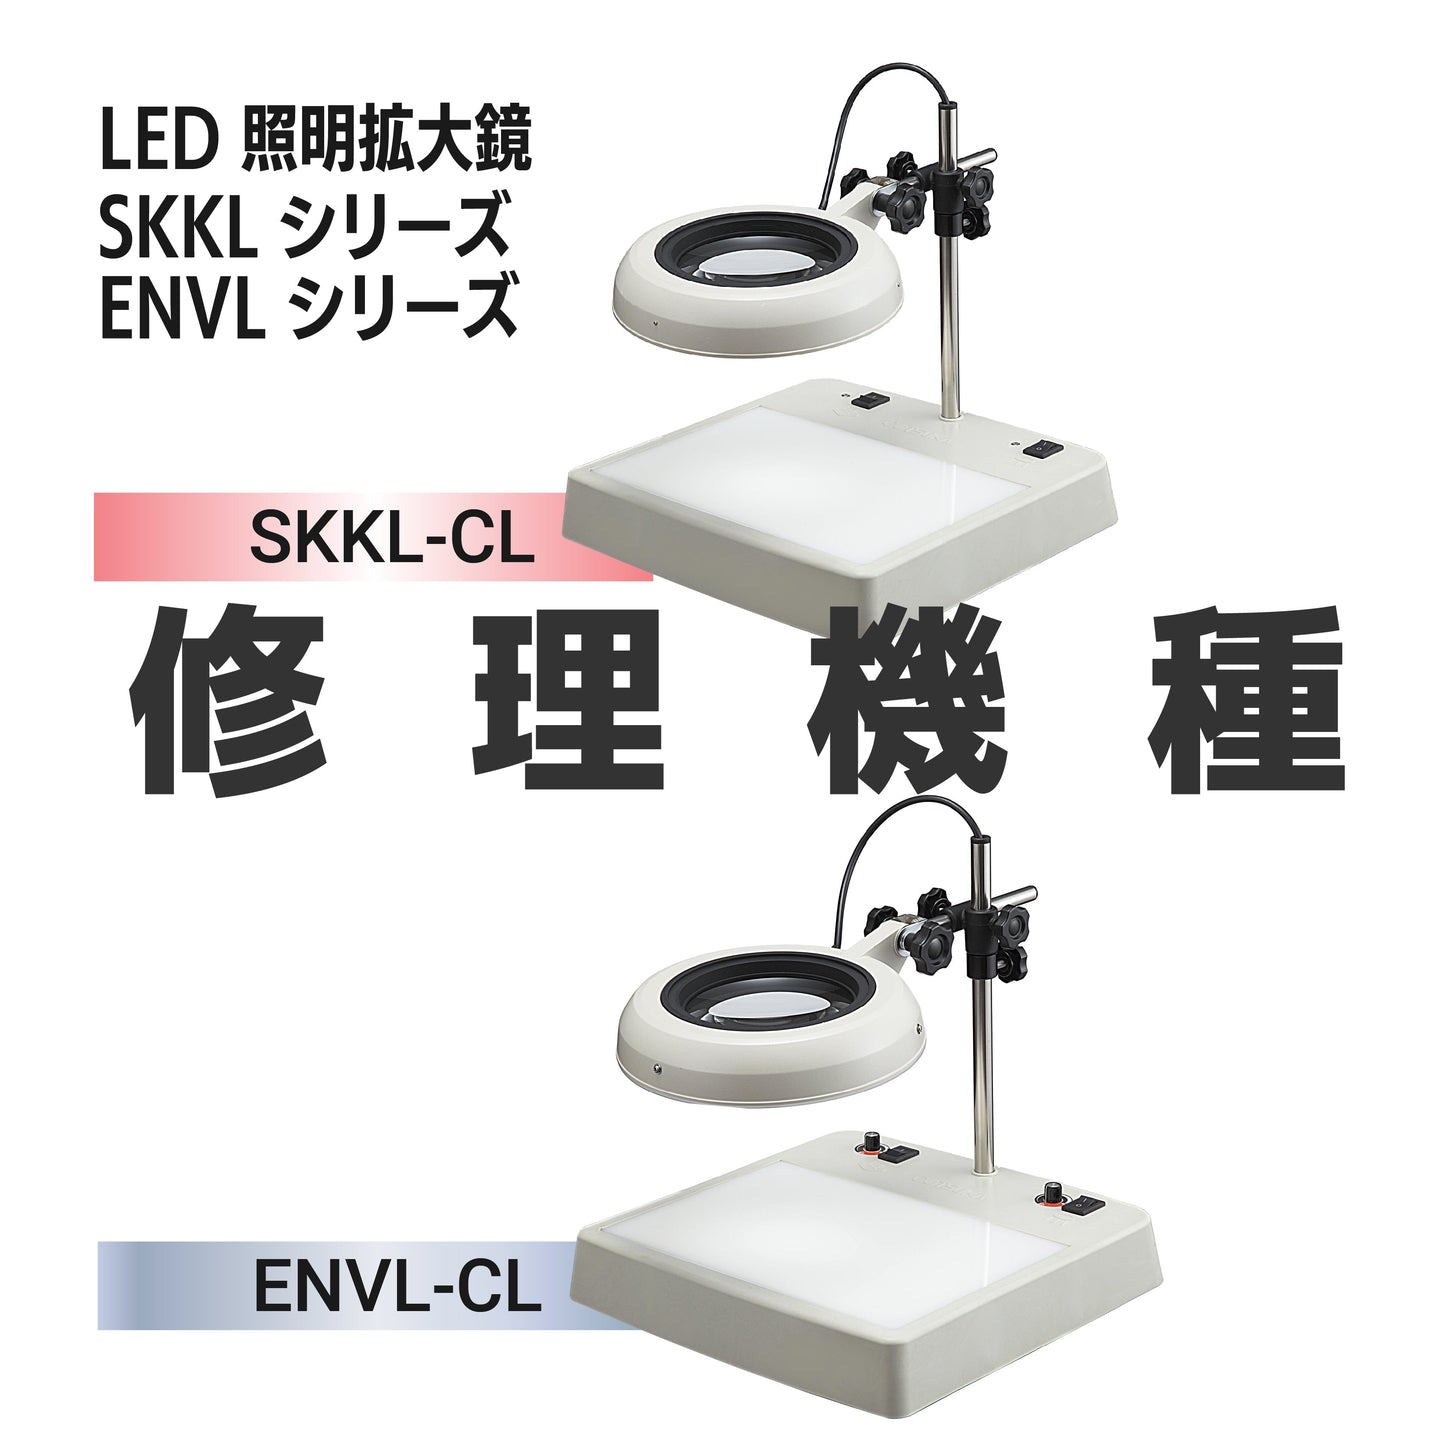 SKKL/ENVL series: SKKL-CL type, ENVL-CL type